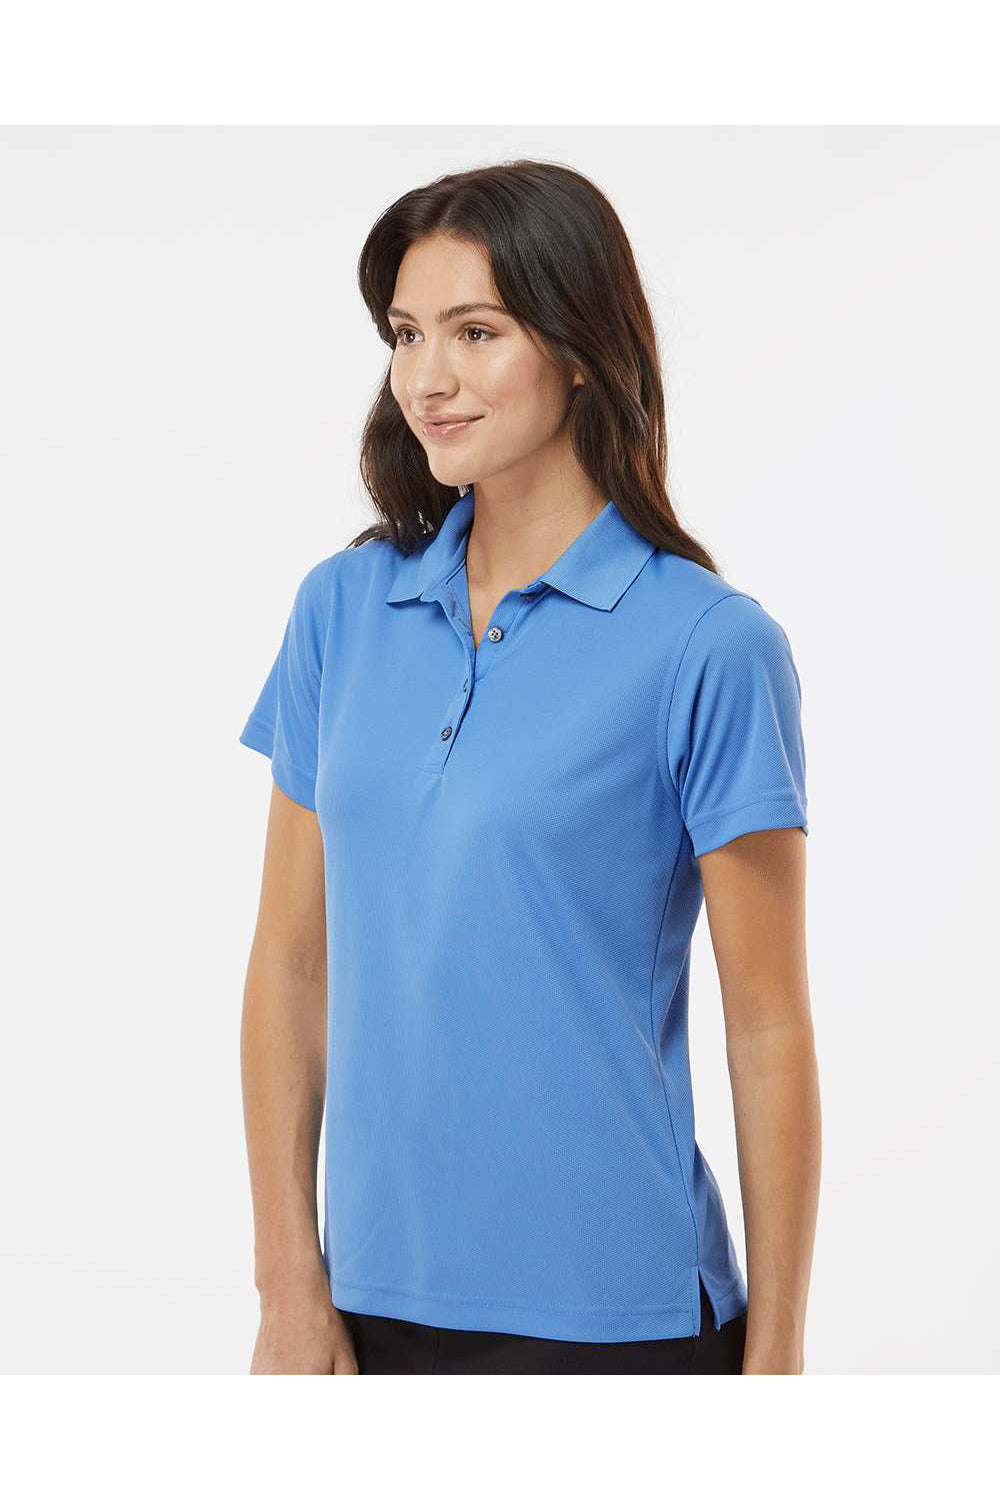 Paragon 104 Womens Saratoga Performance Mini Mesh Short Sleeve Polo Shirt Bimini Blue Model Side